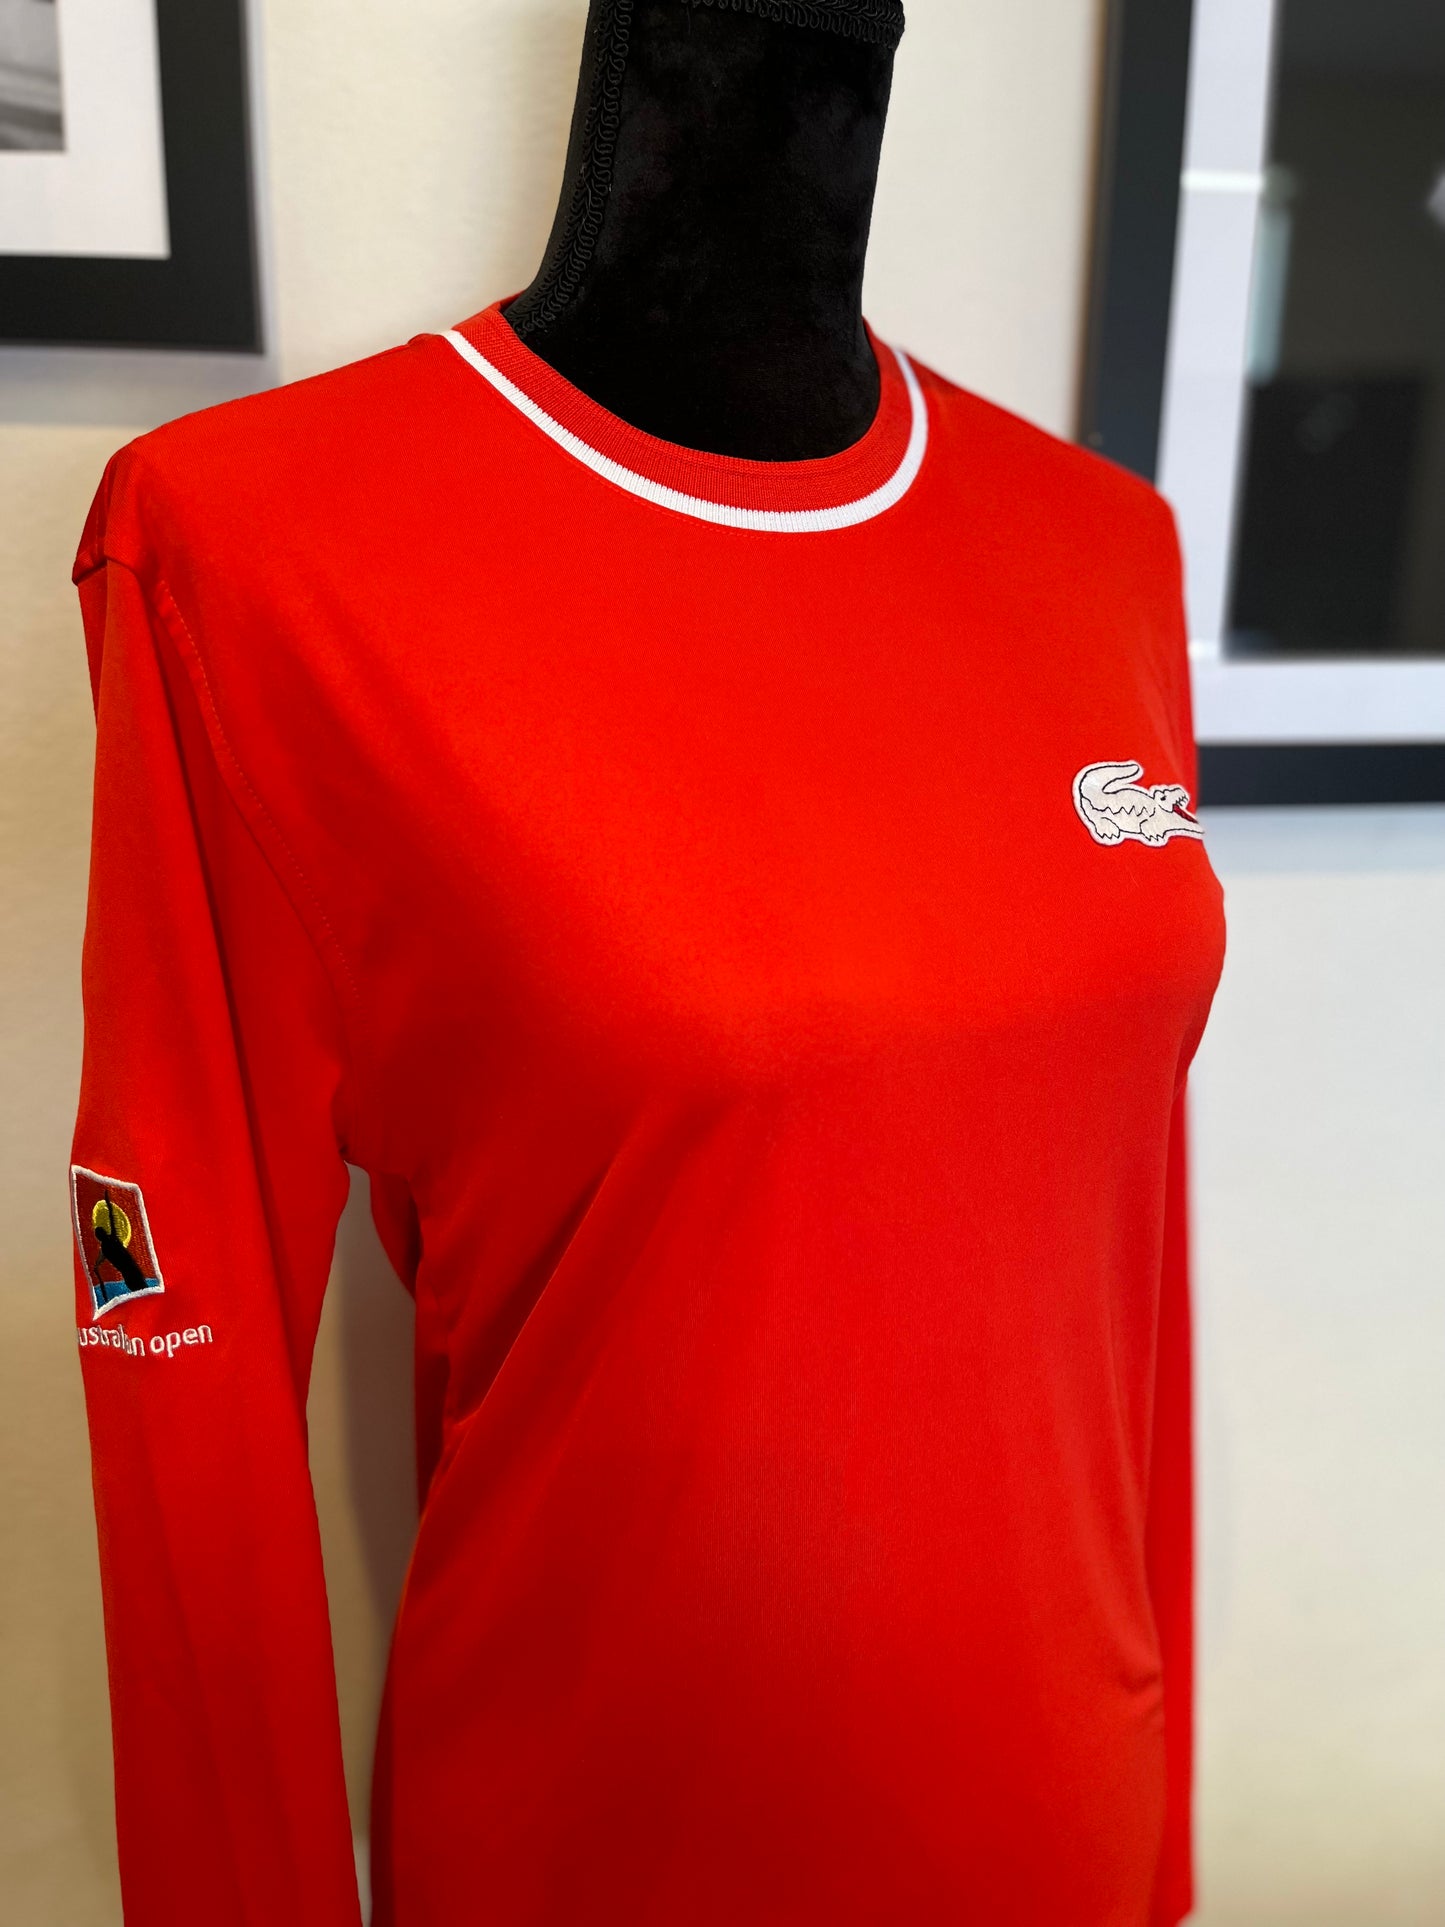 Lacoste Vintage Australian Open Women’s Red Long Sleeve T Size 2 Small